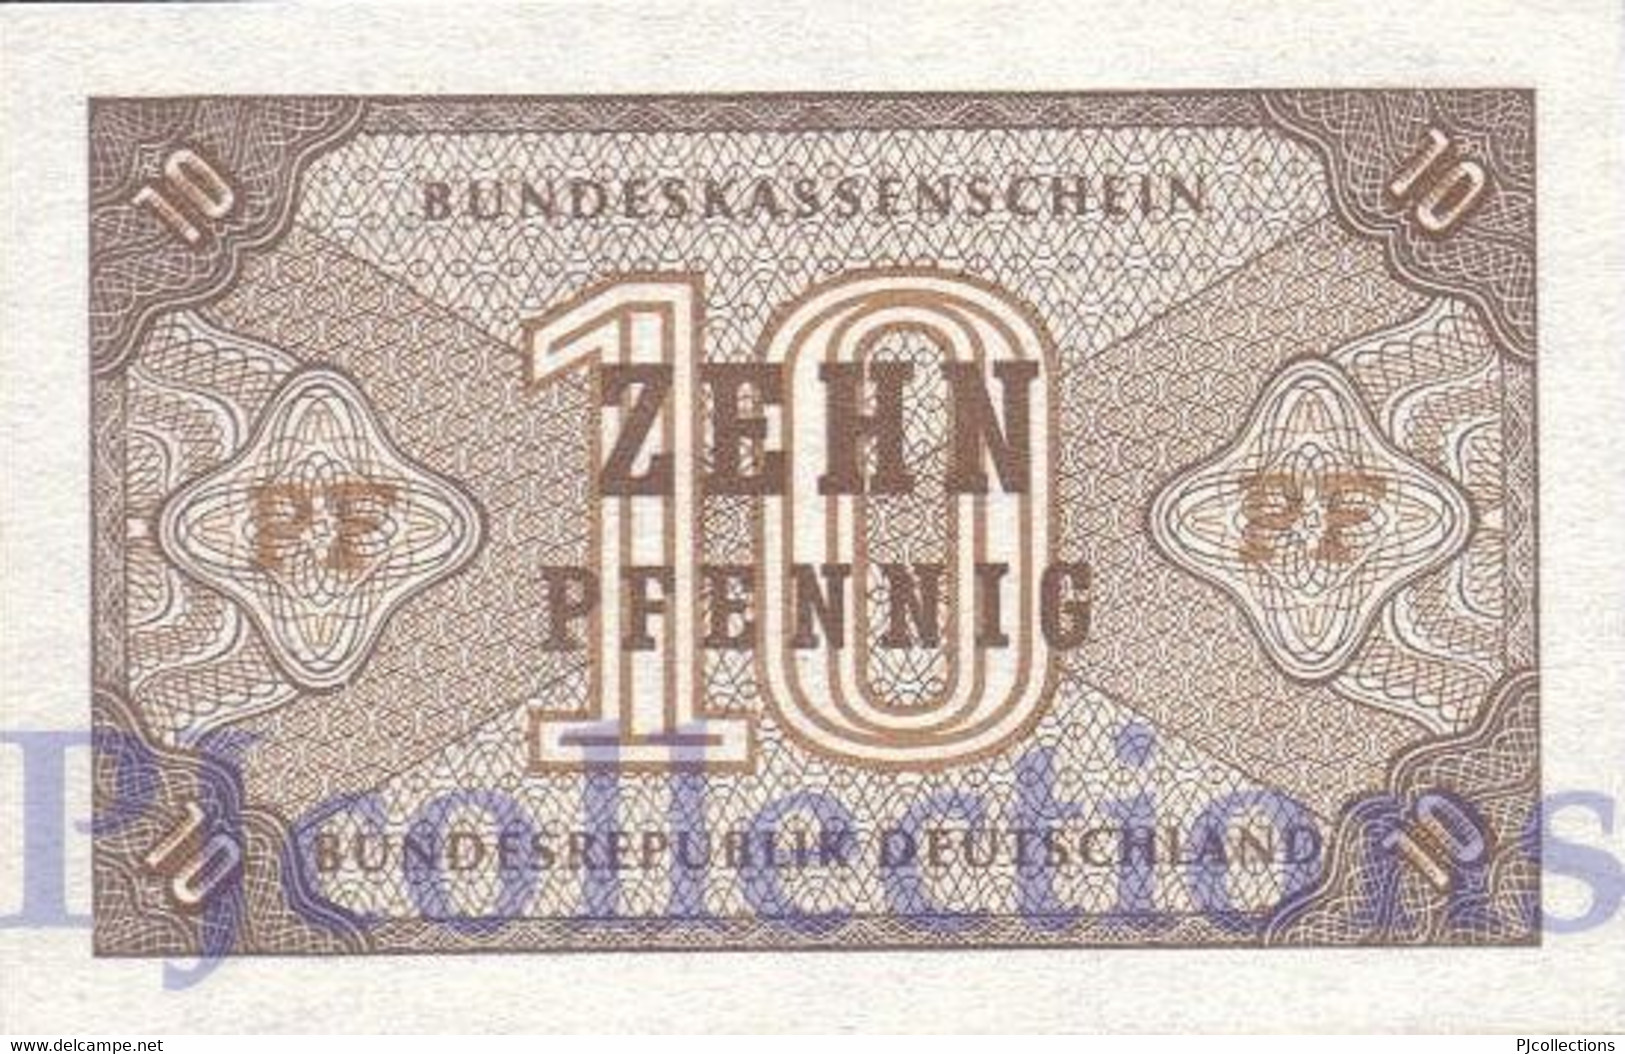 GERMANY FEDERAL REPUBLIC 10 PFENNING 1967 PICK 26 UNC - 10 Pfennig